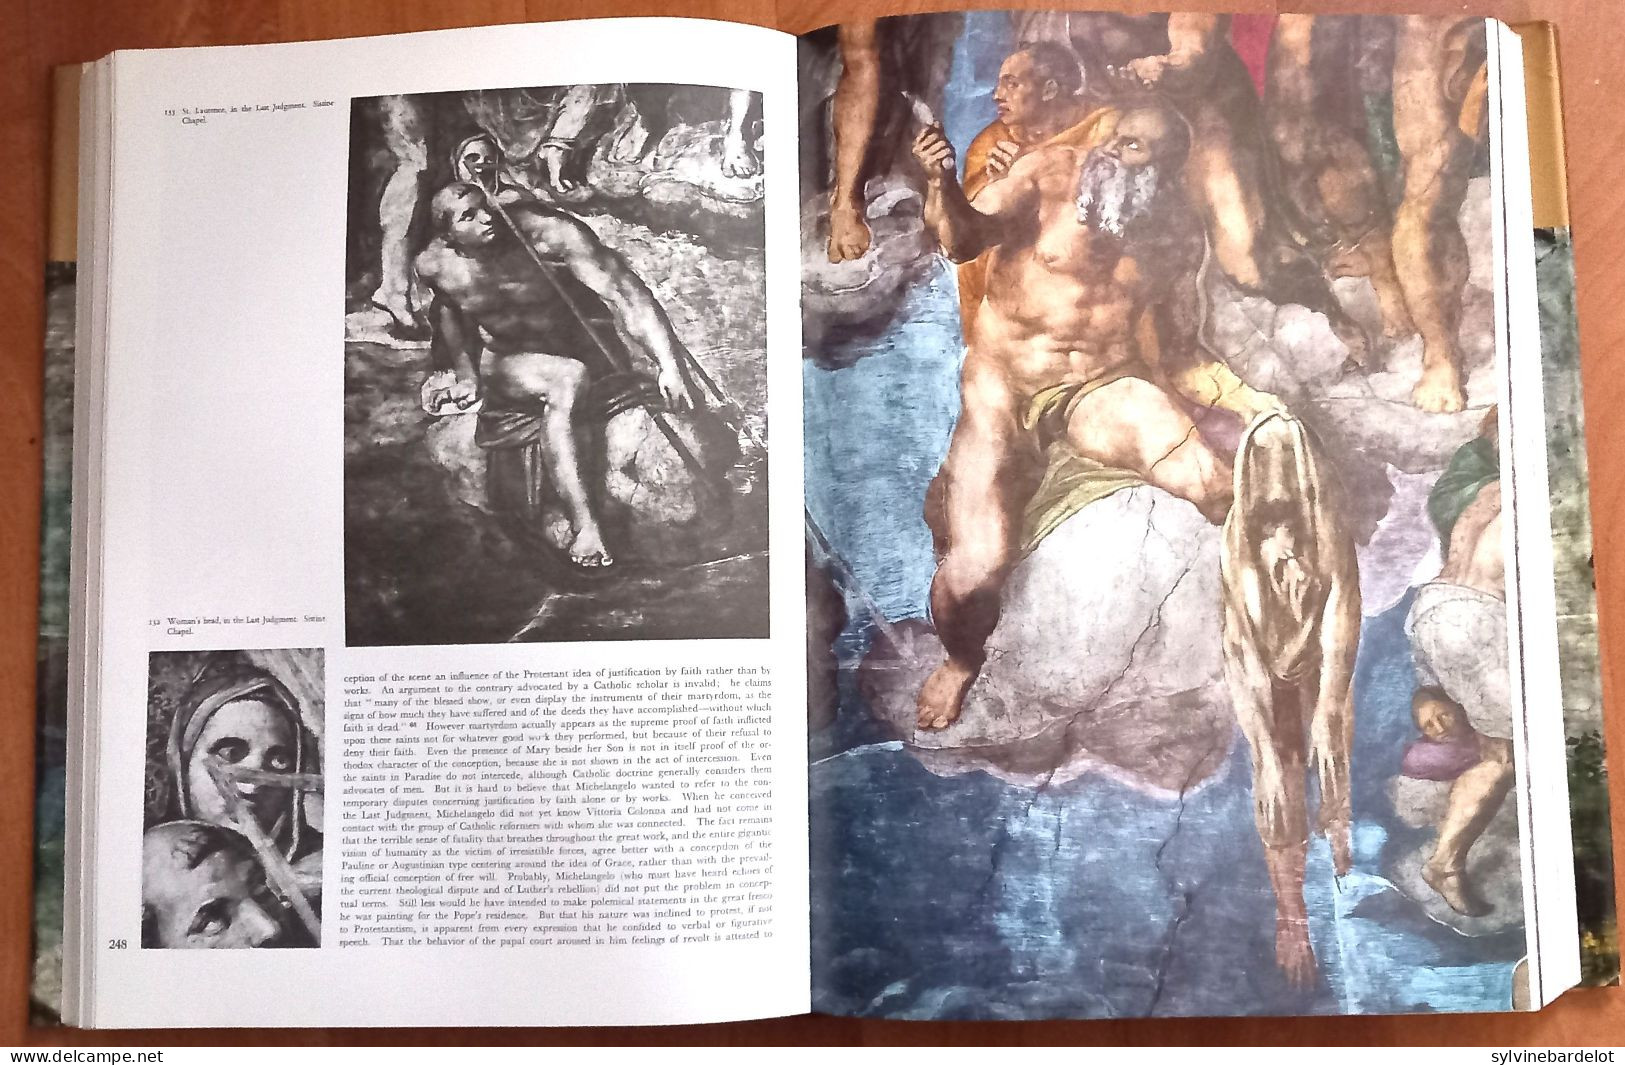 The Complete Work Of Michelangelo  - Mario Salmi, Charles De Tolnay, Umberto Baldini   & Roberto Salvini, - Schone Kunsten